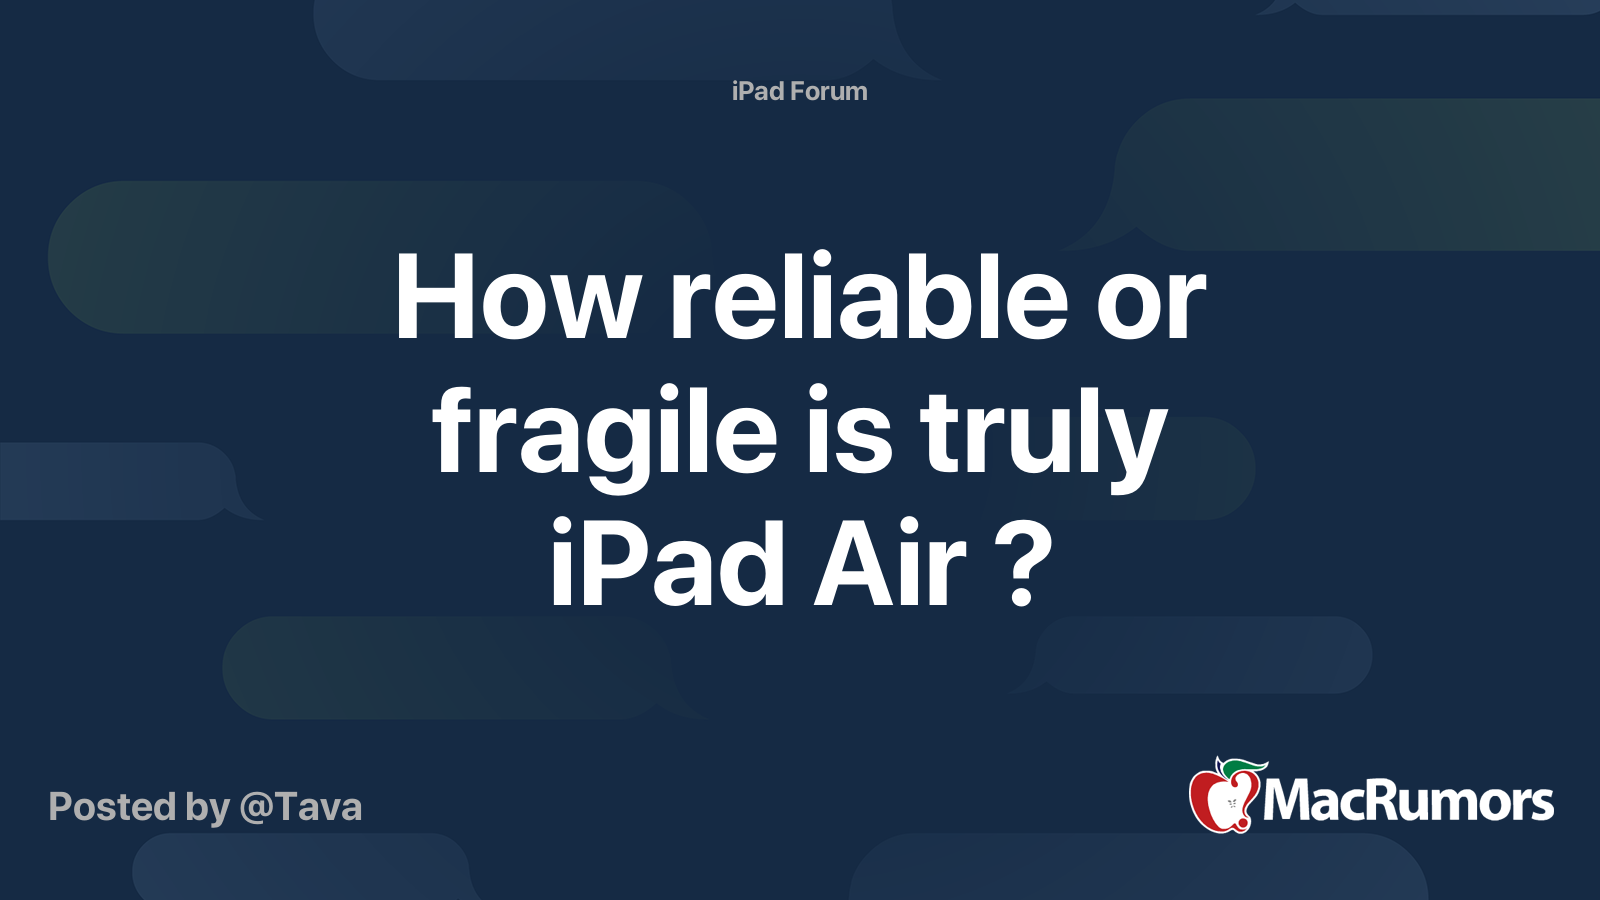 How fragile is iPad air?